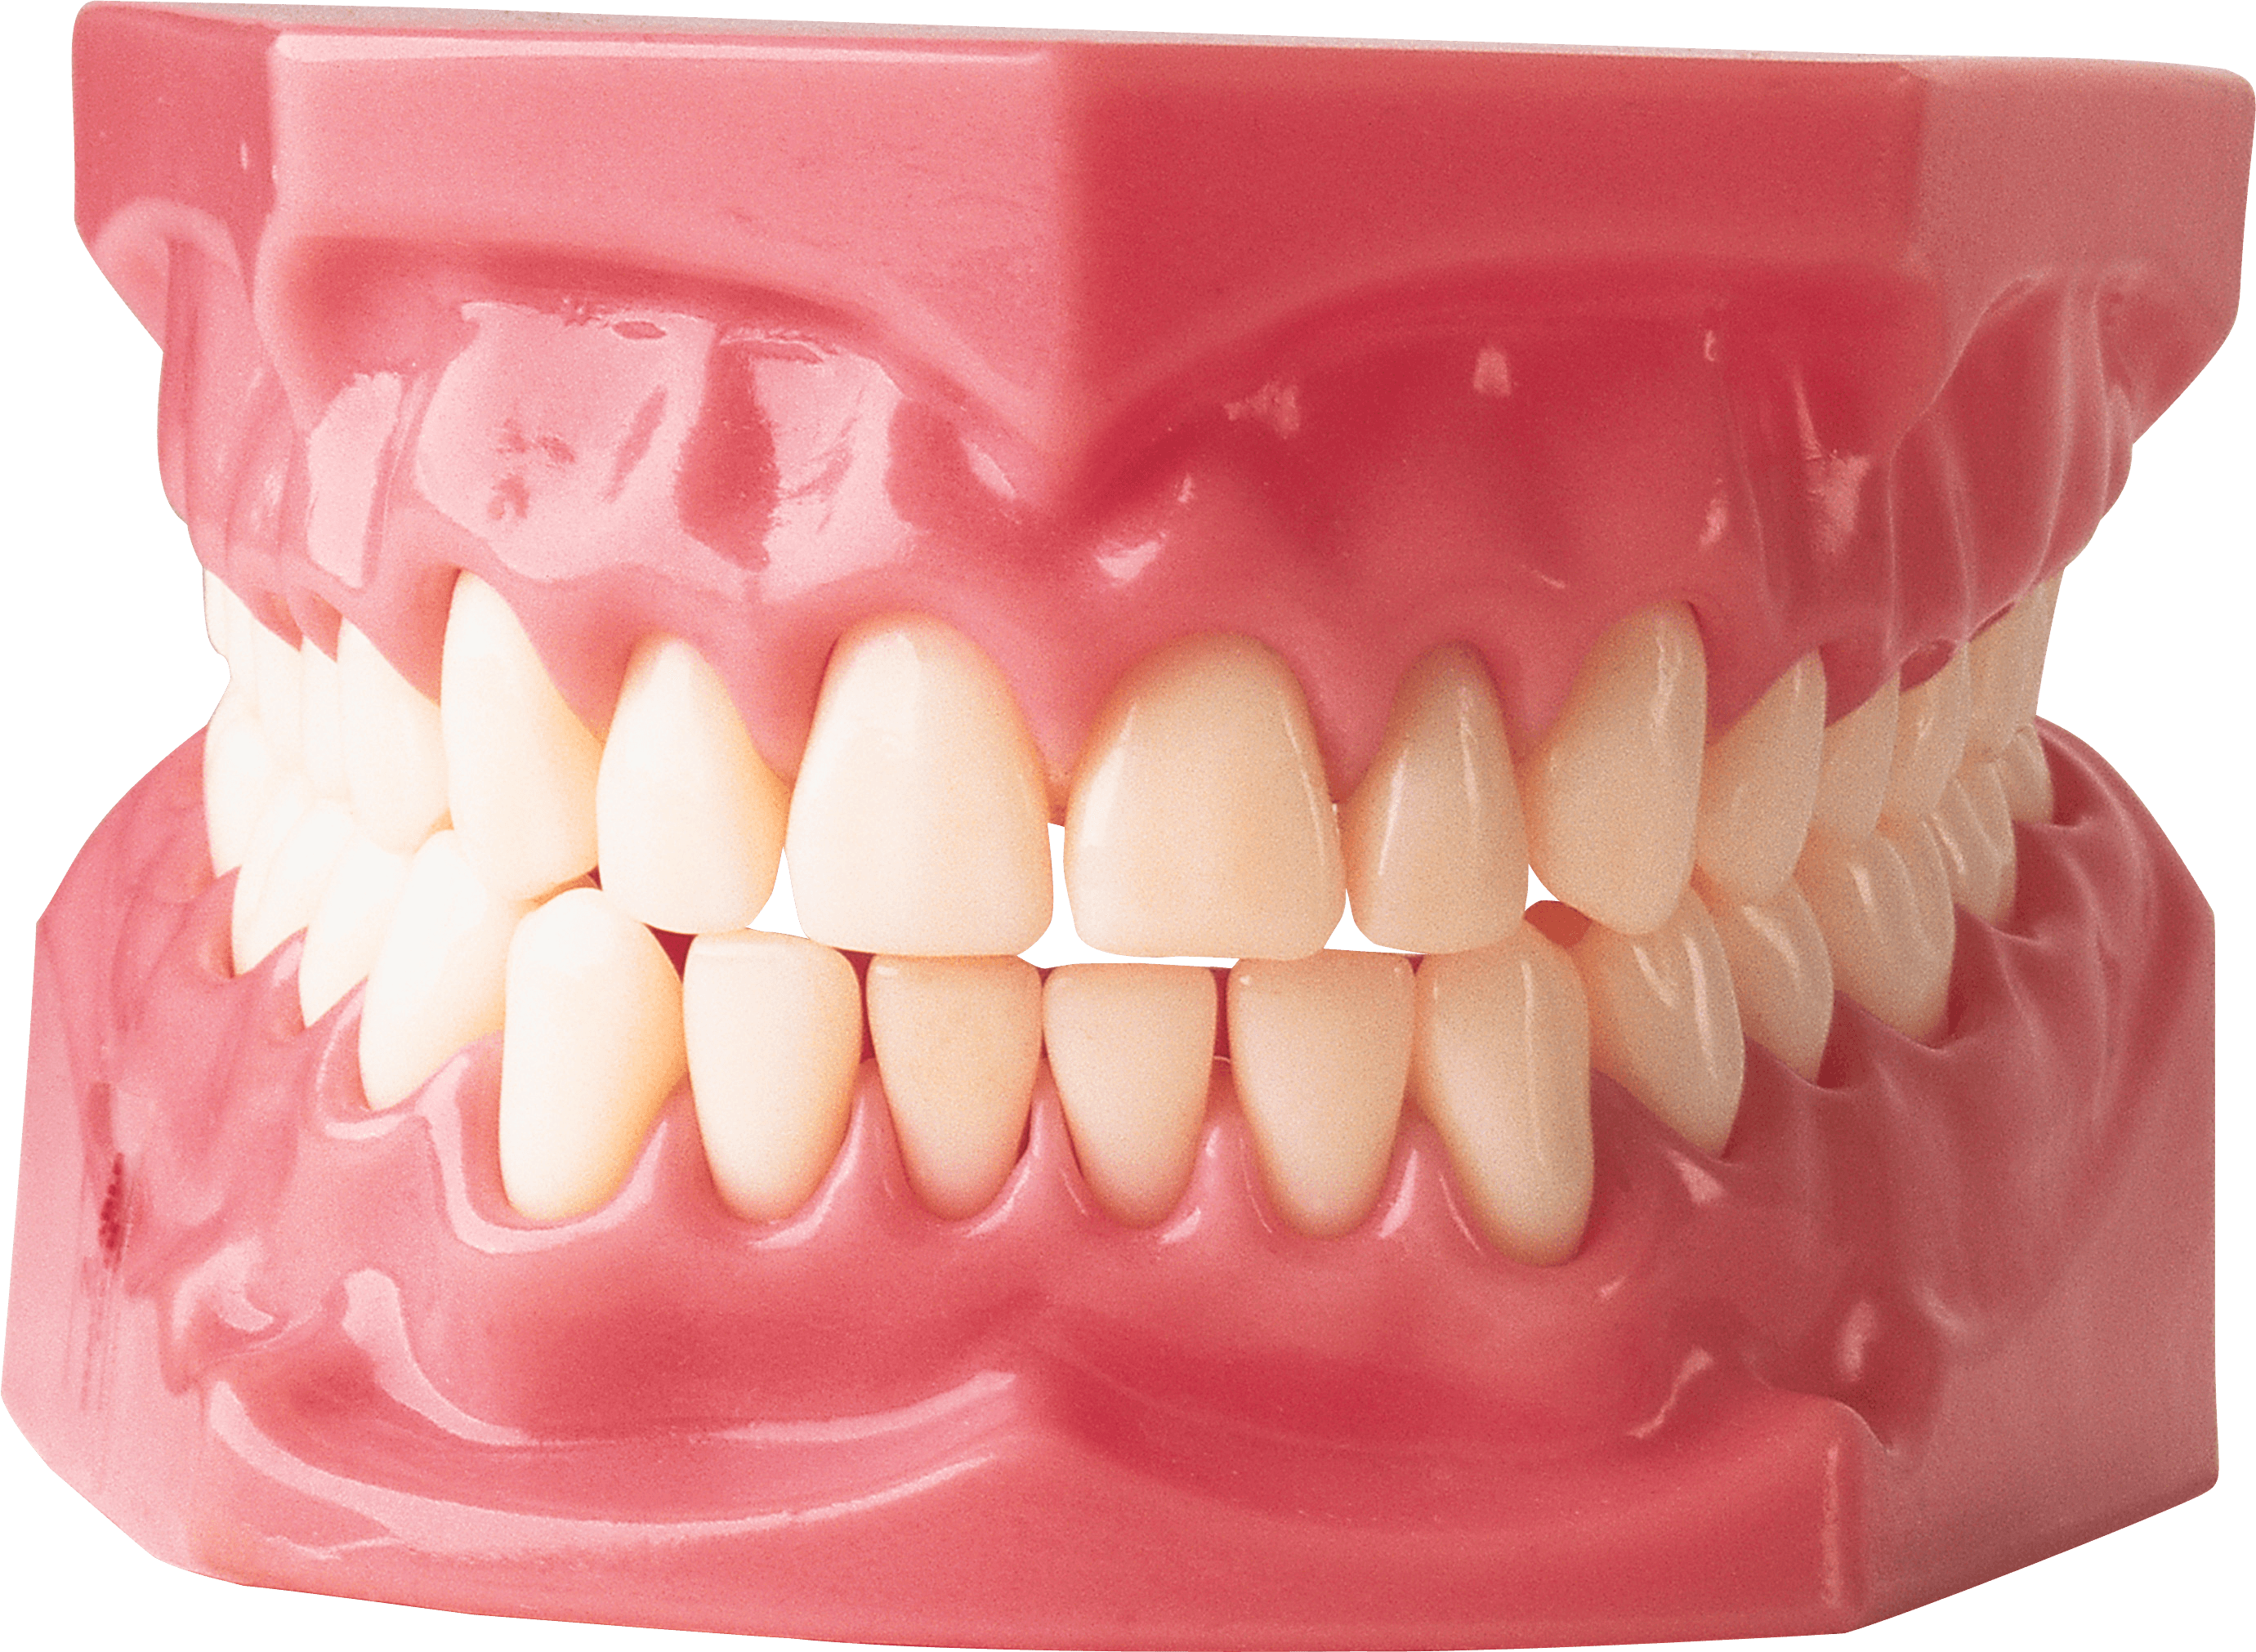 Teeth Png Image PNG Image